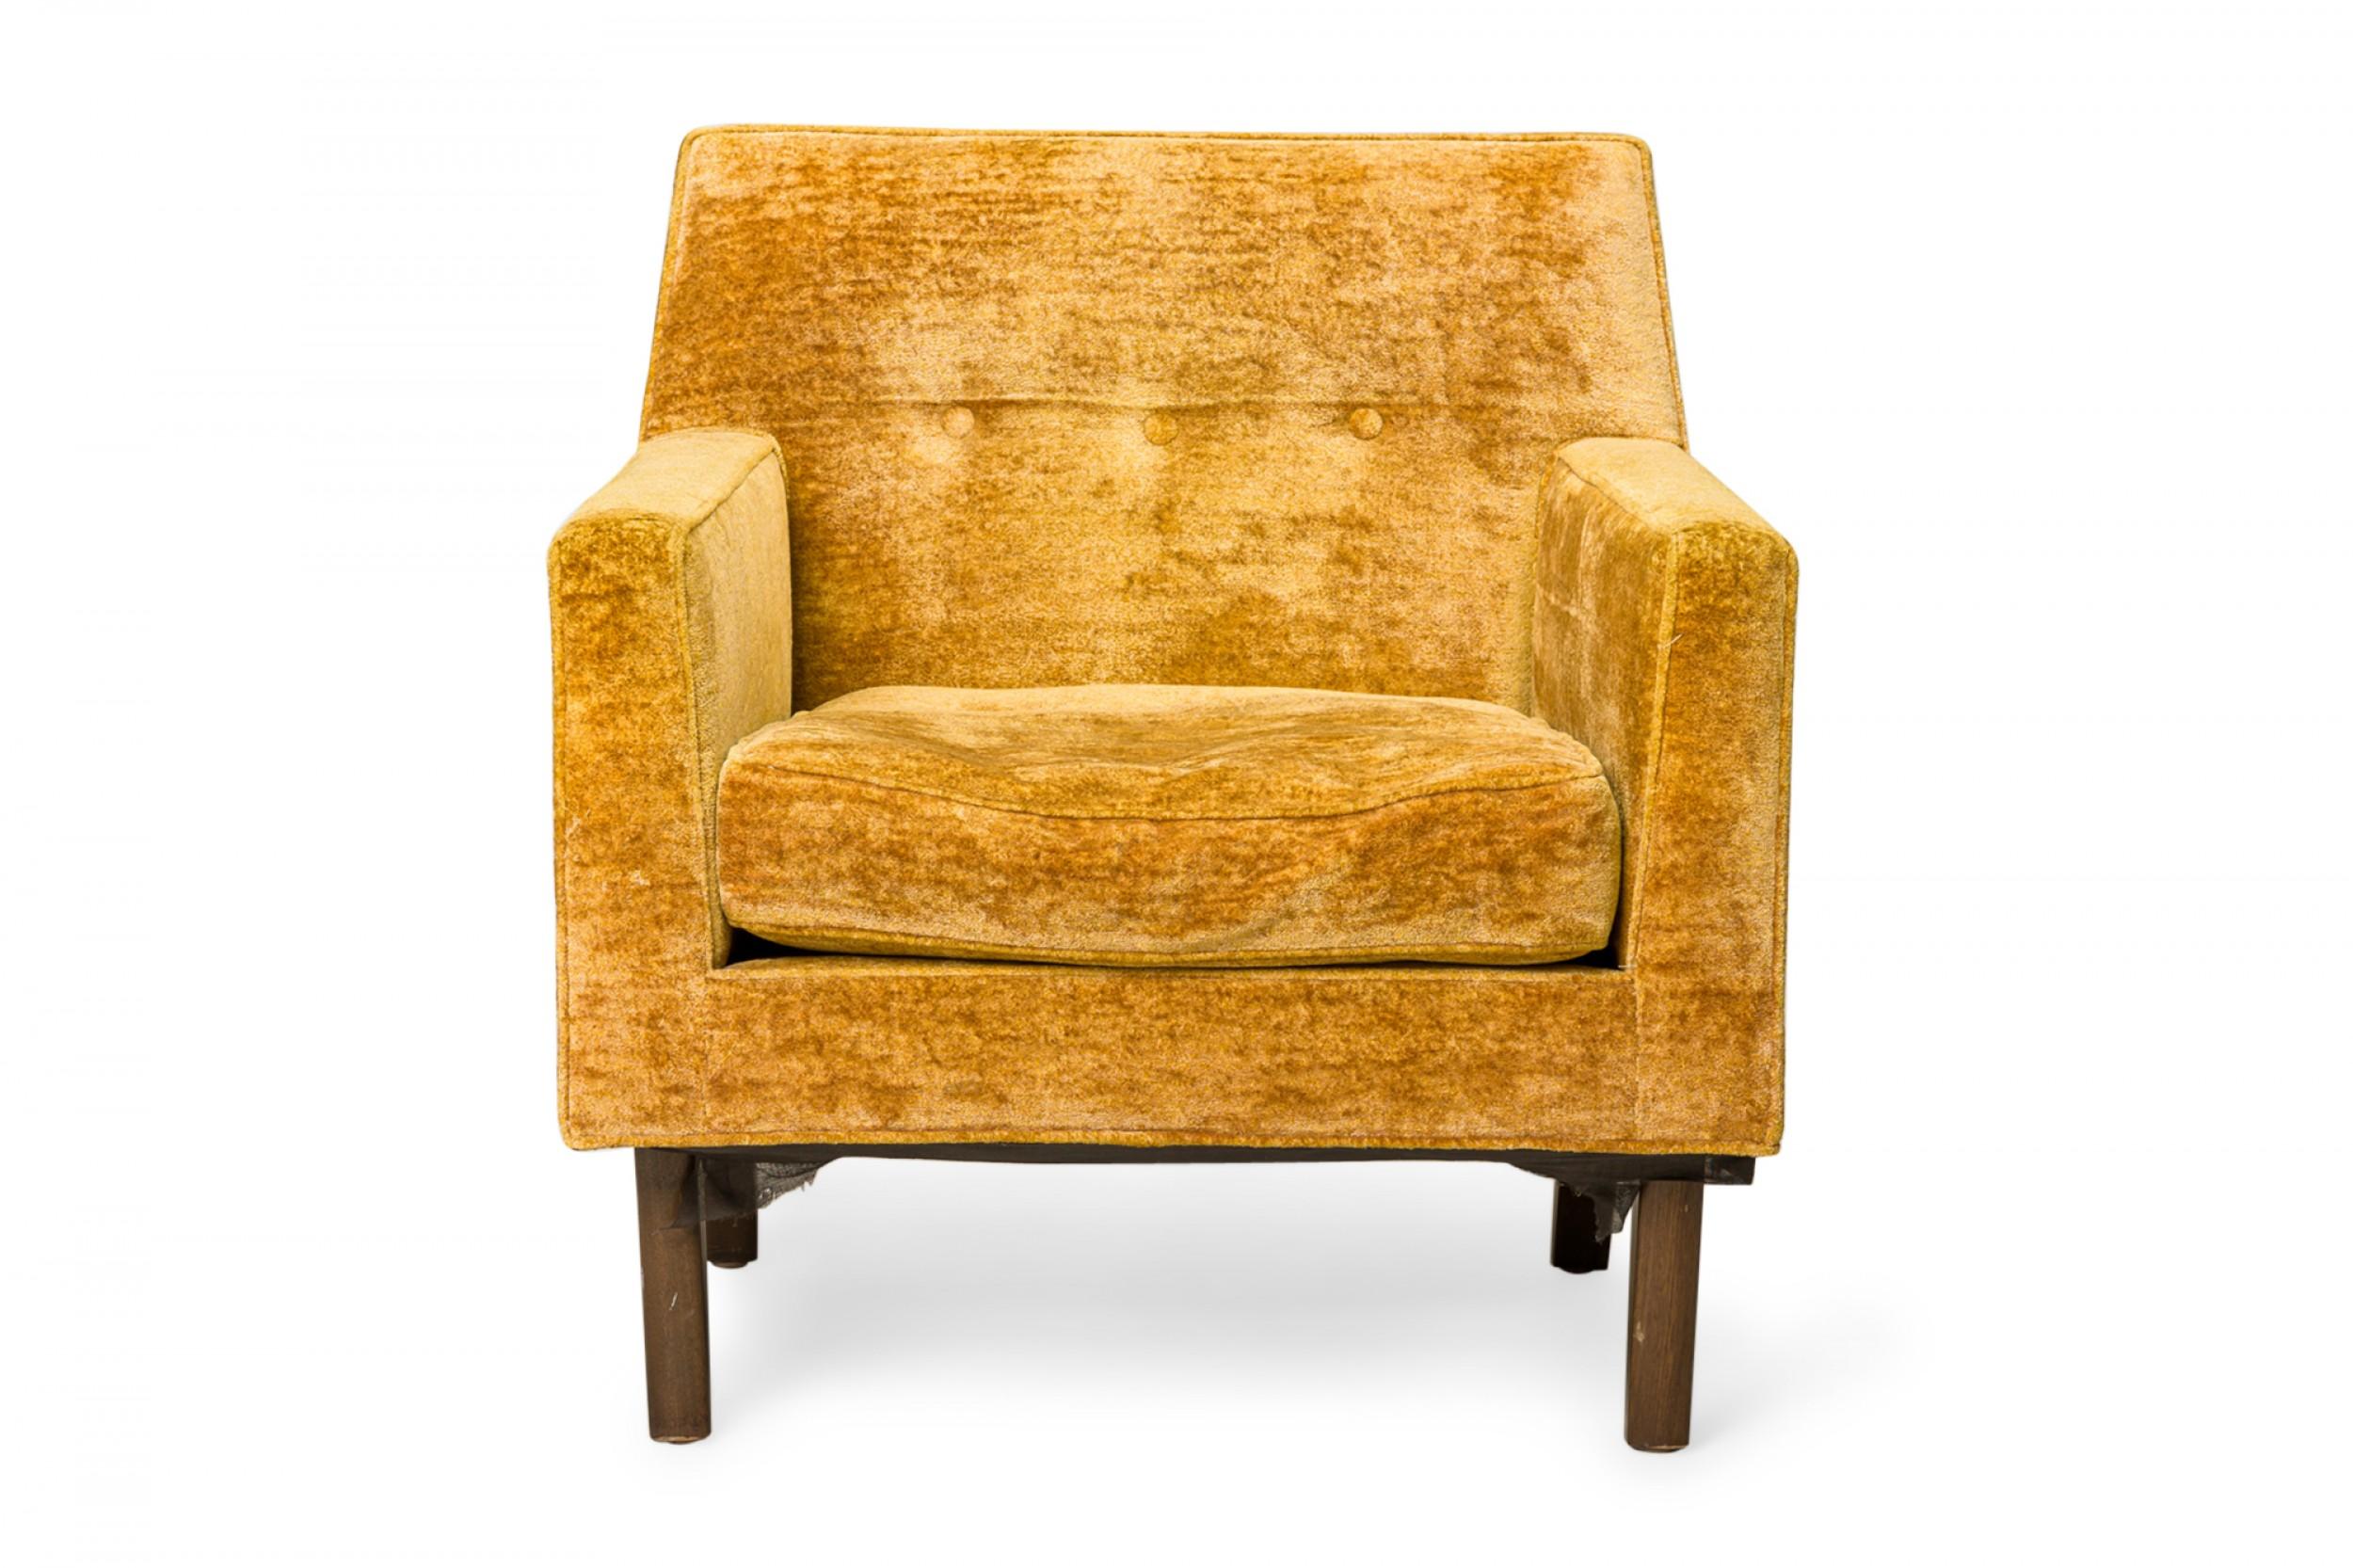 Amerikanischer Loungesessel aus der Mitte des Jahrhunderts mit quadratischen Armlehnen und einer sich leicht verjüngenden, kurzen Rückenlehne. Der Sessel ist mit goldfarbenem Velours gepolstert und hat ein mit Knöpfen besetztes Rückenkissen, das auf